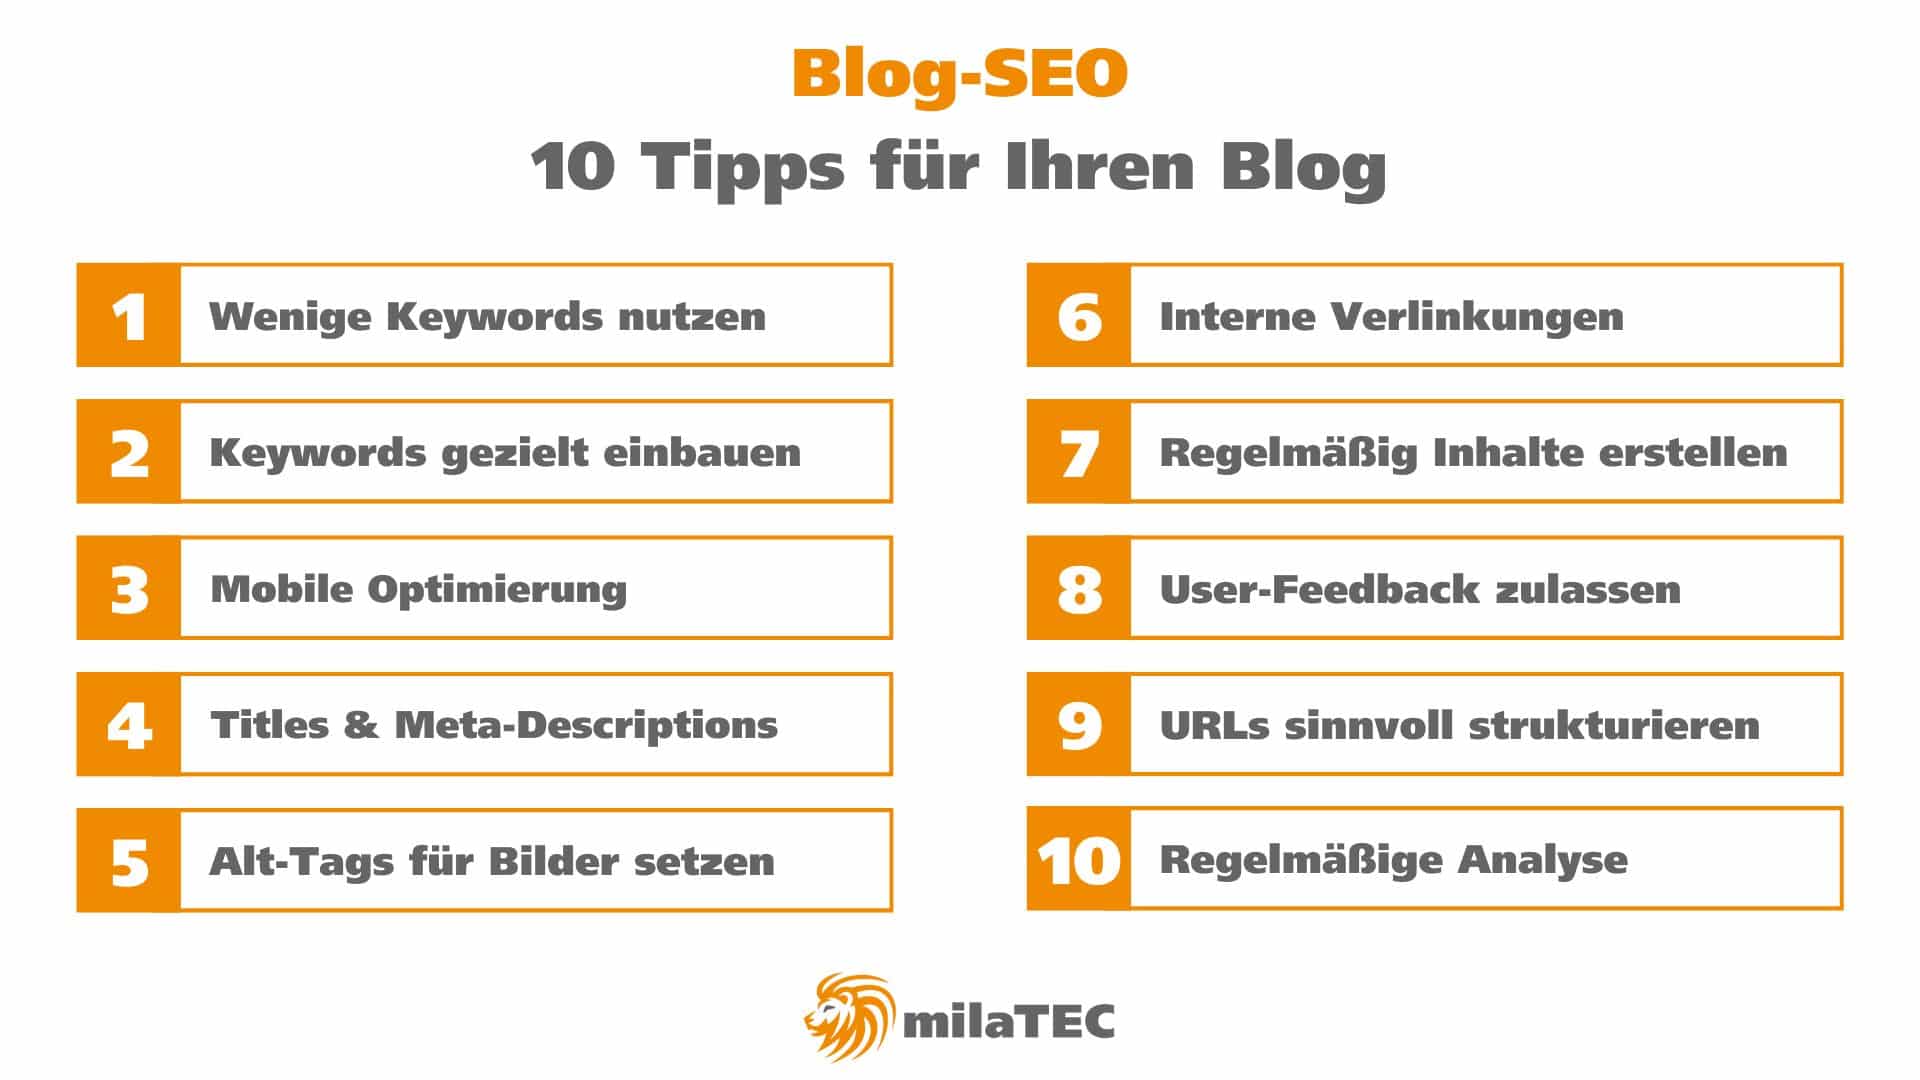 Blog-SEO Tipps